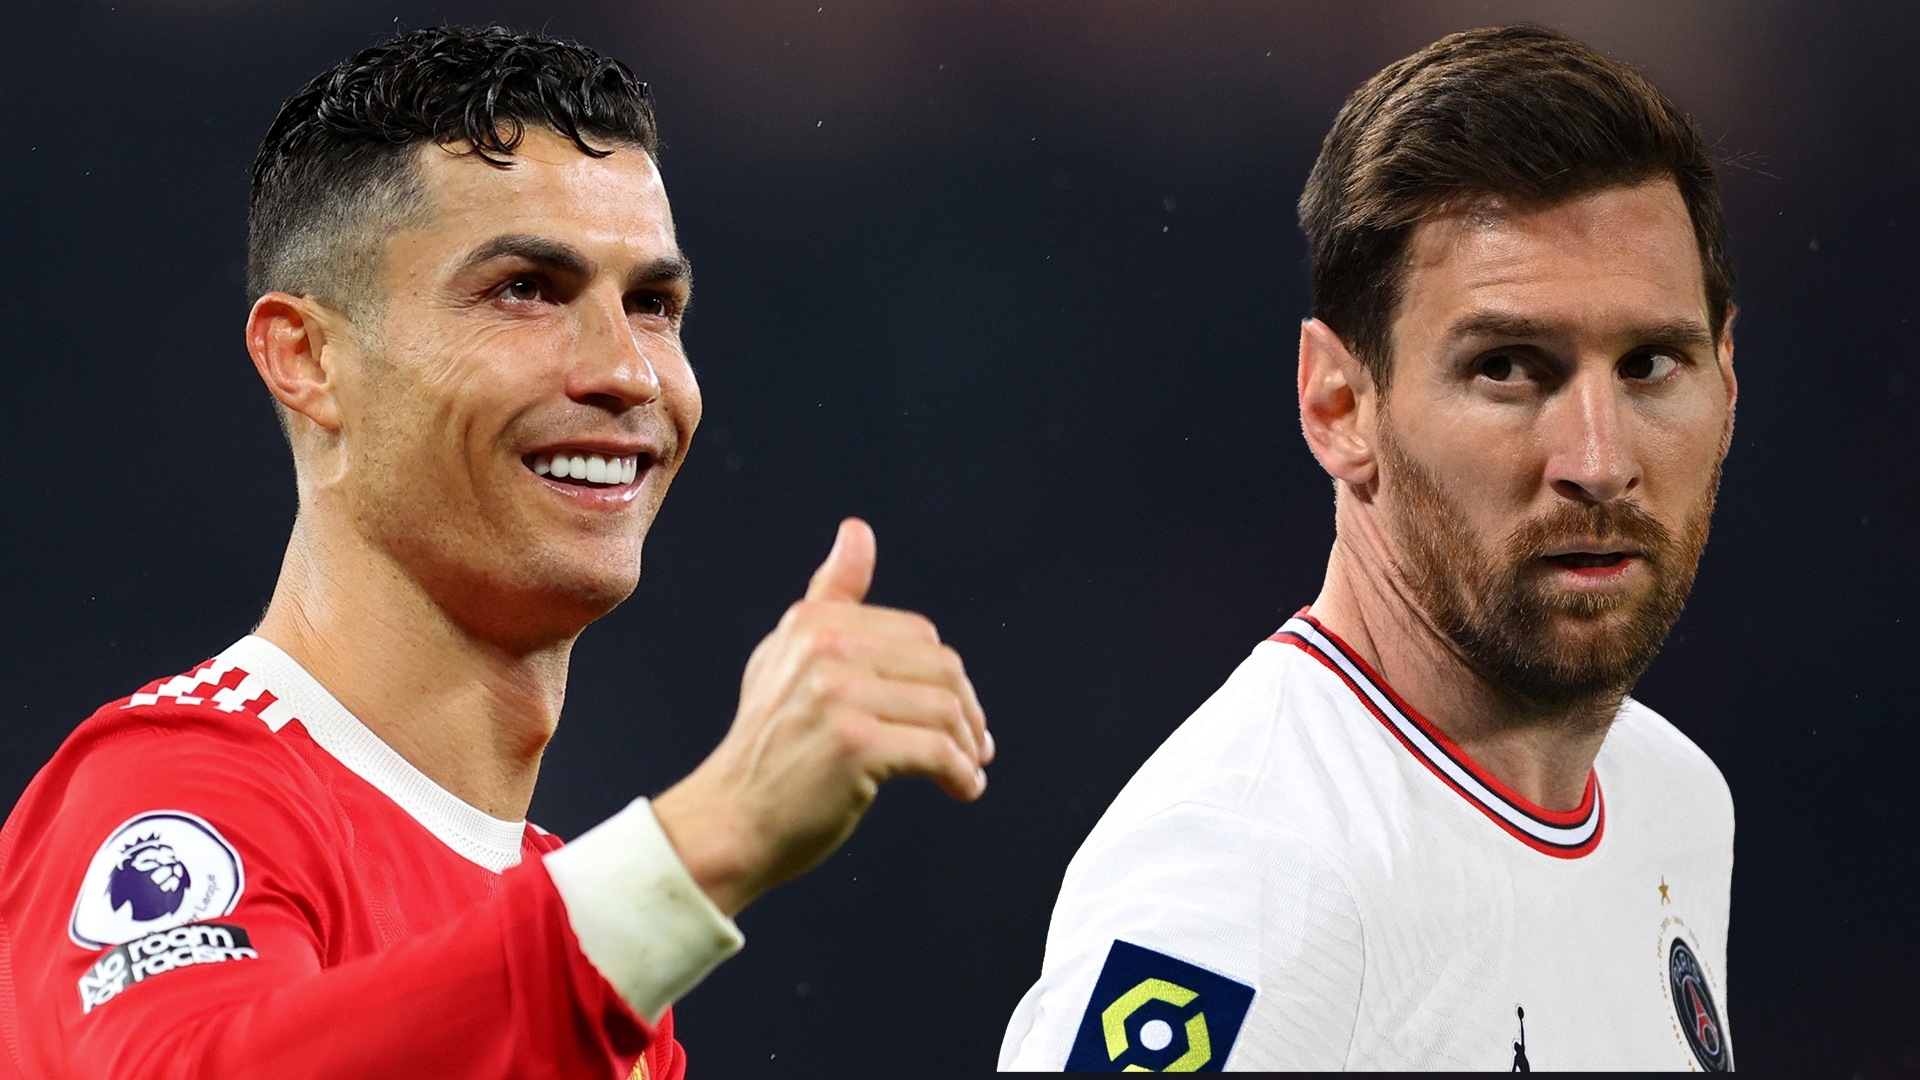 Pse Ronaldo është i nominuar për Topin e Artë ndërsa Messi jo? L’Eqiupe shpjegon arsyet